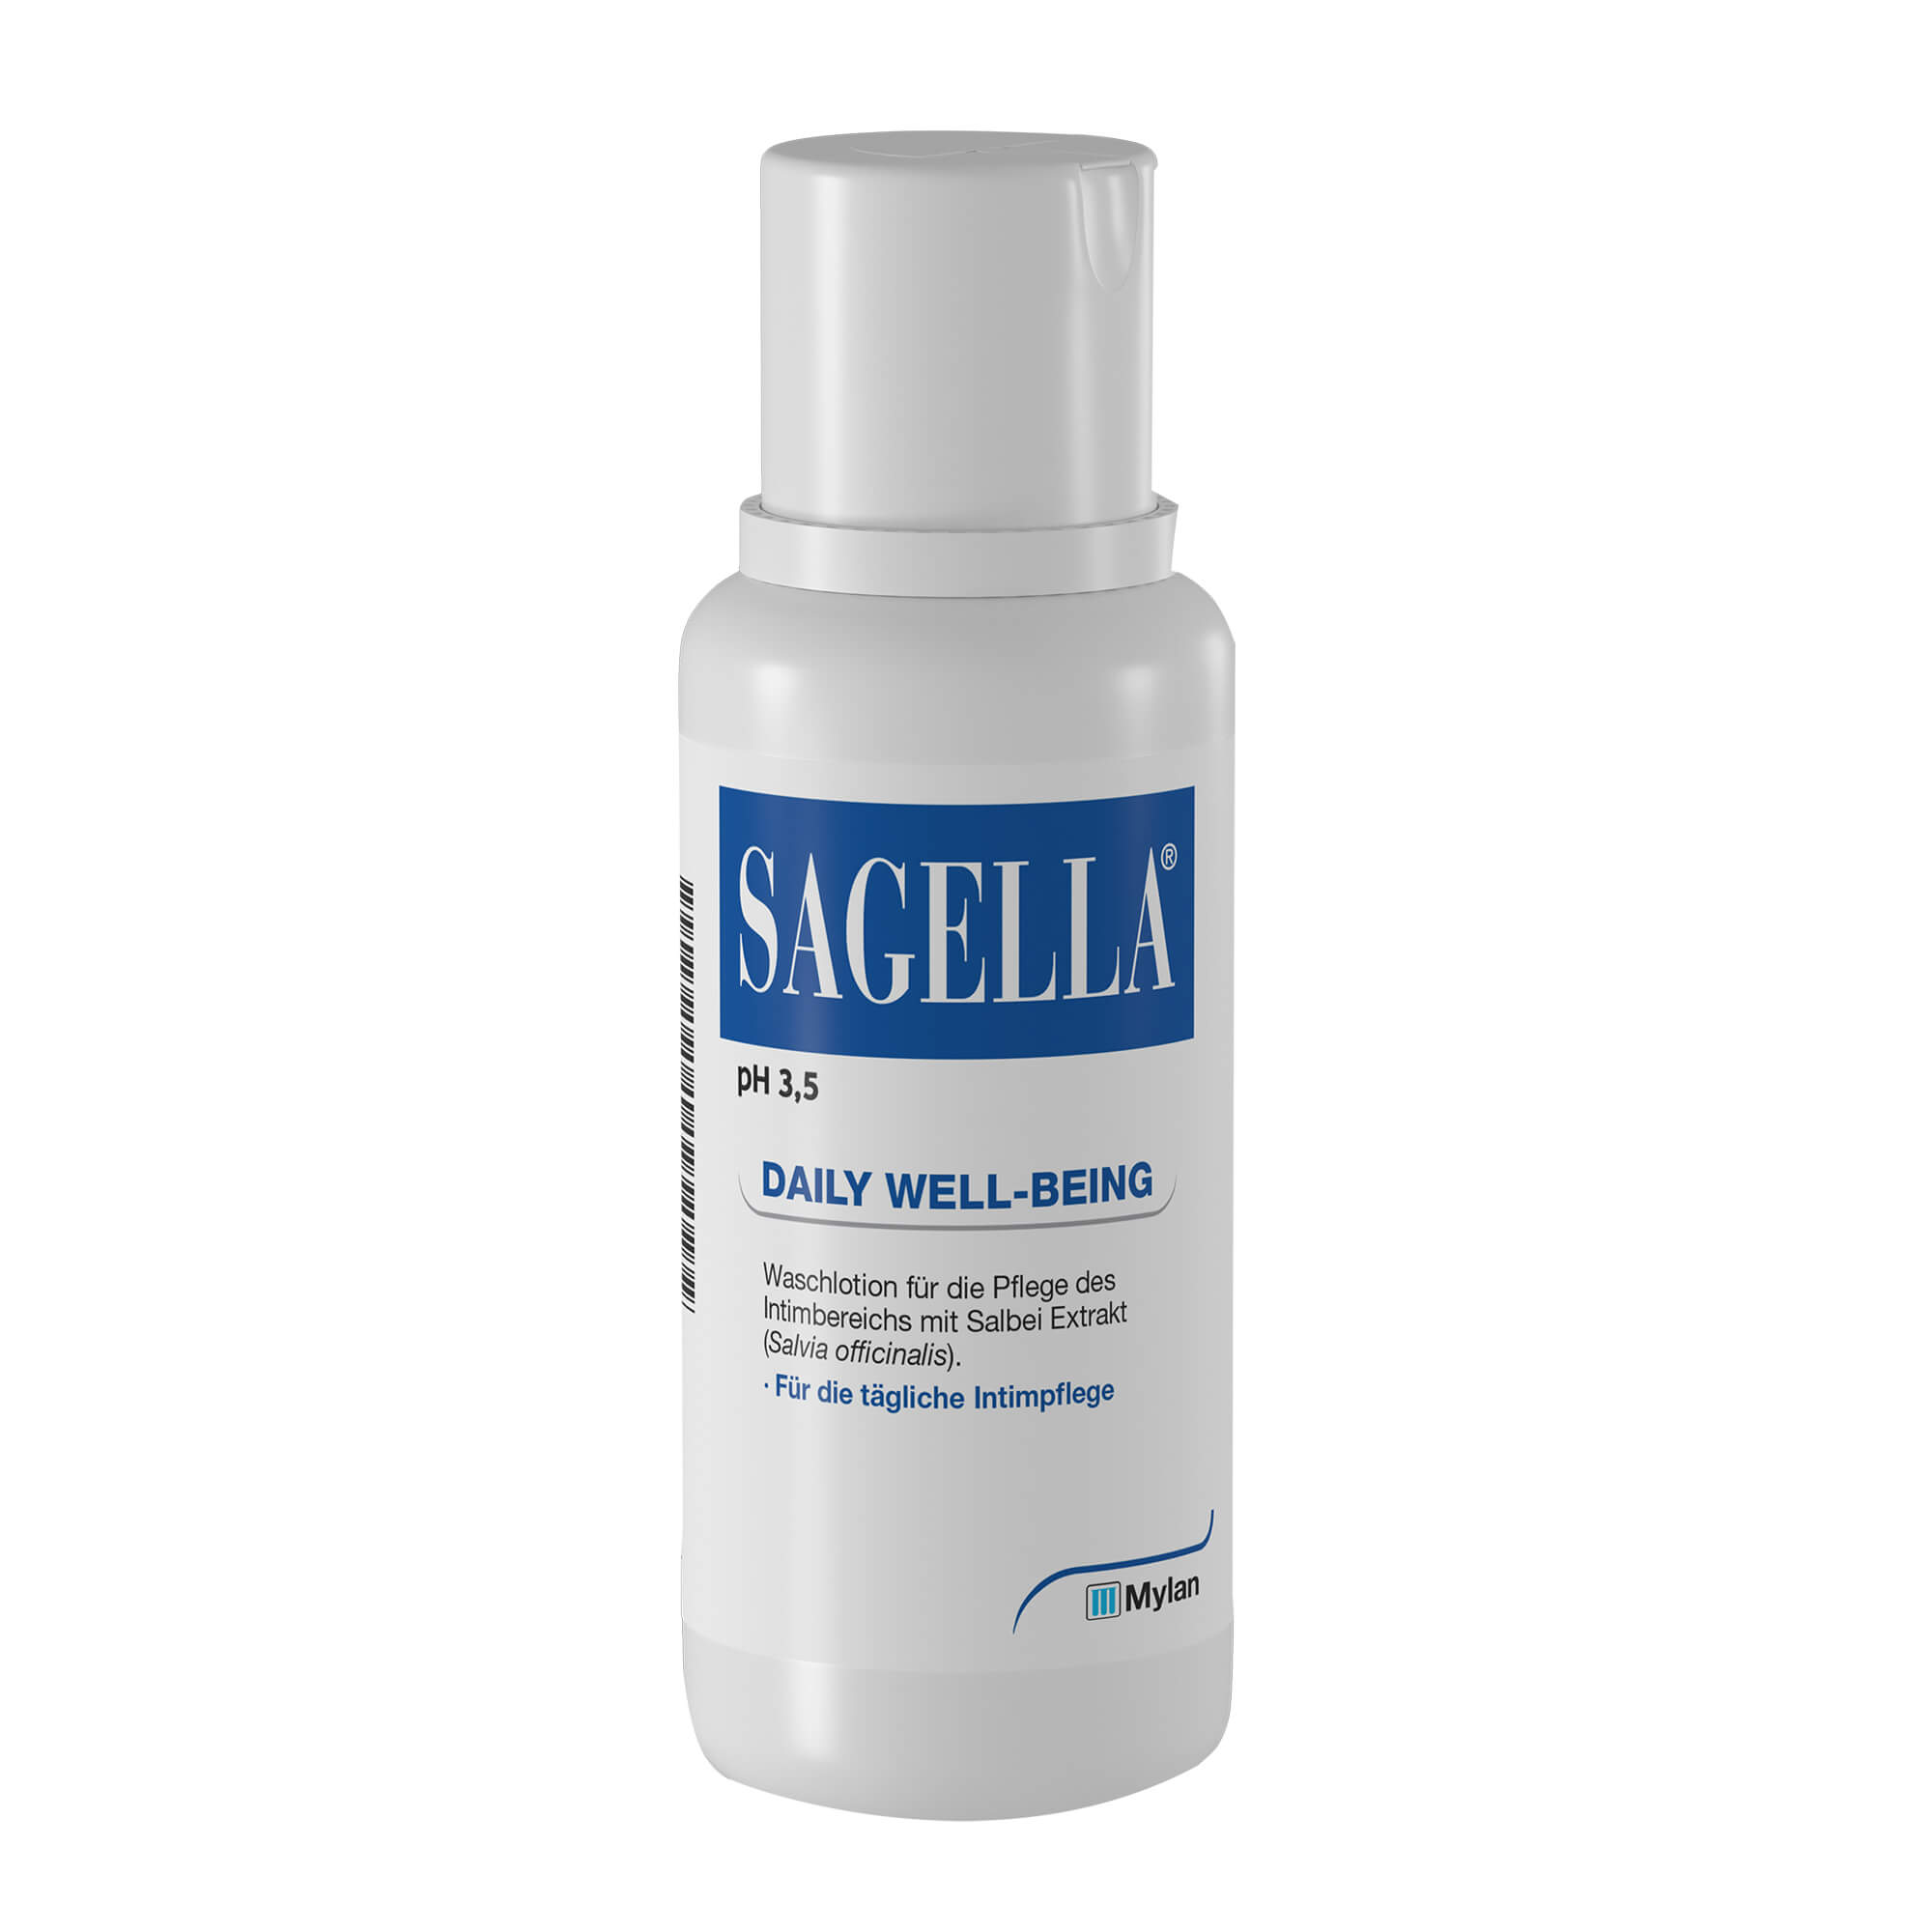 Sagella pH 3,5 Waschlotion Daily Well-Being